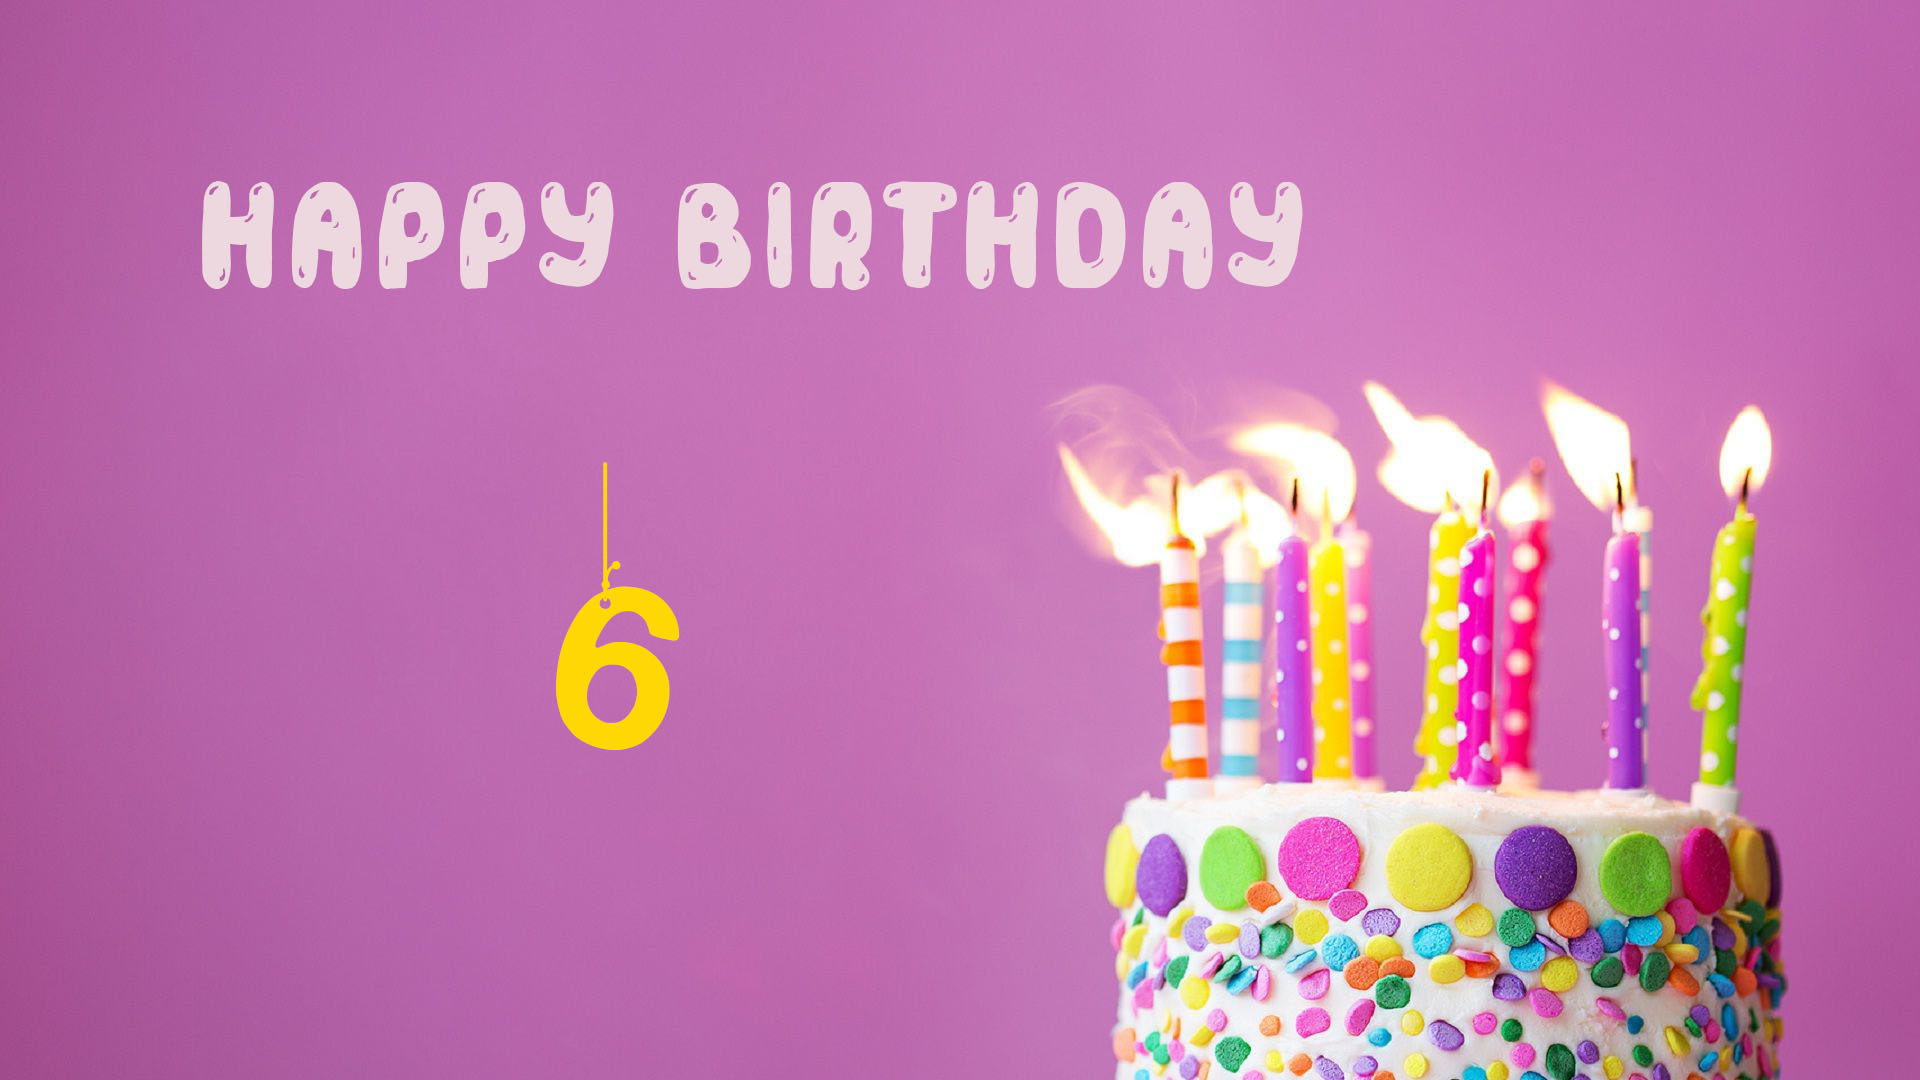 Happy 6 Birthday - Happy 6 Birthday